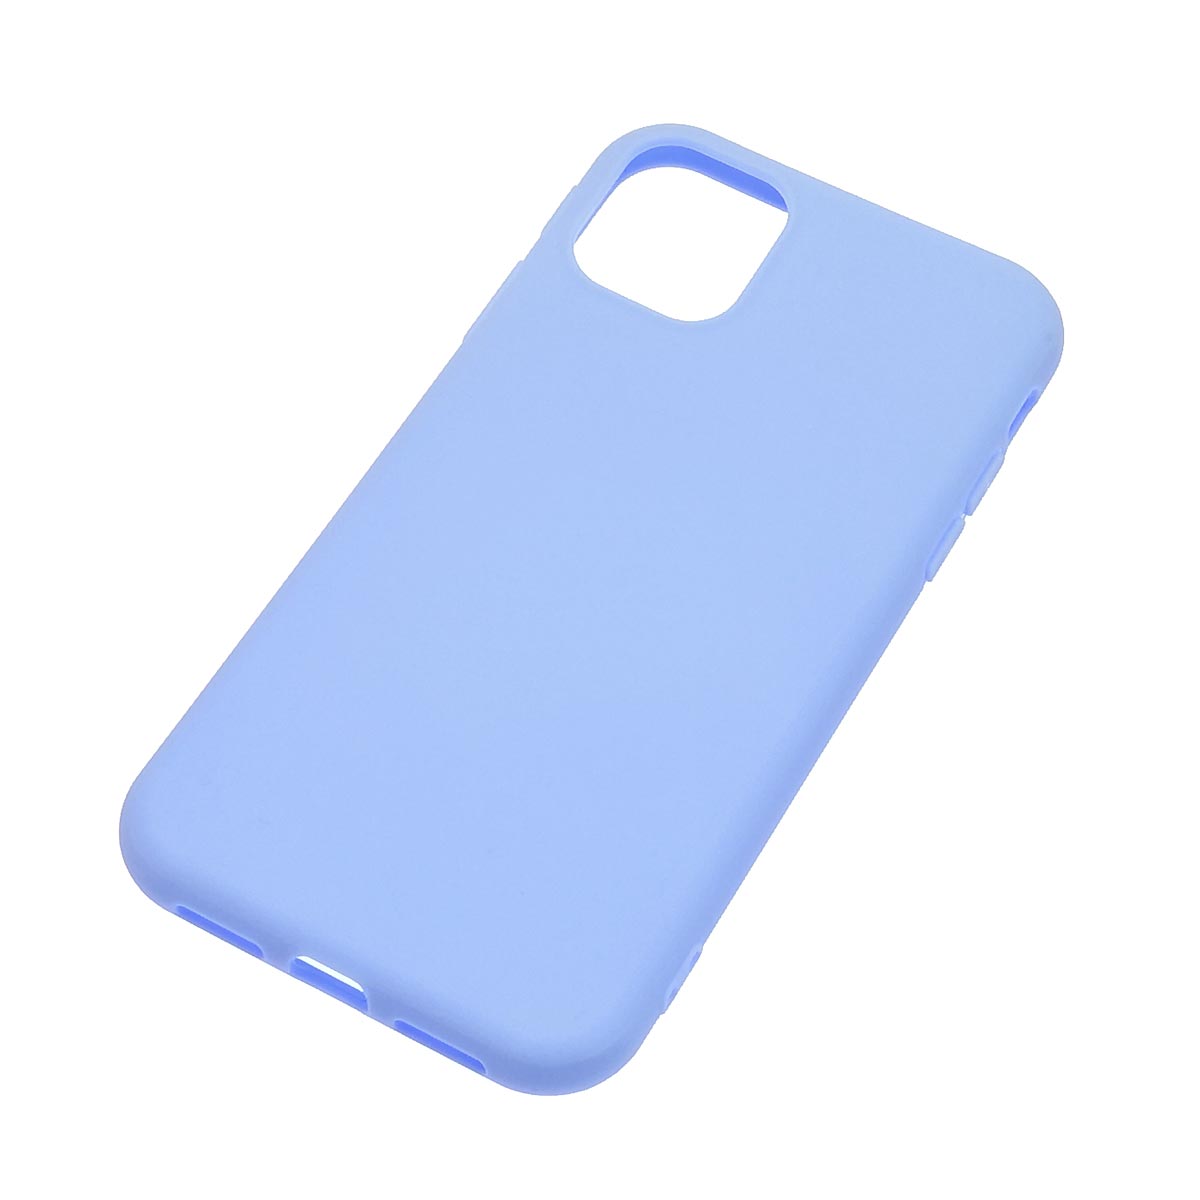 Чехол накладка для APPLE iPhone 11, силикон, матовый, цвет светло сиреневый